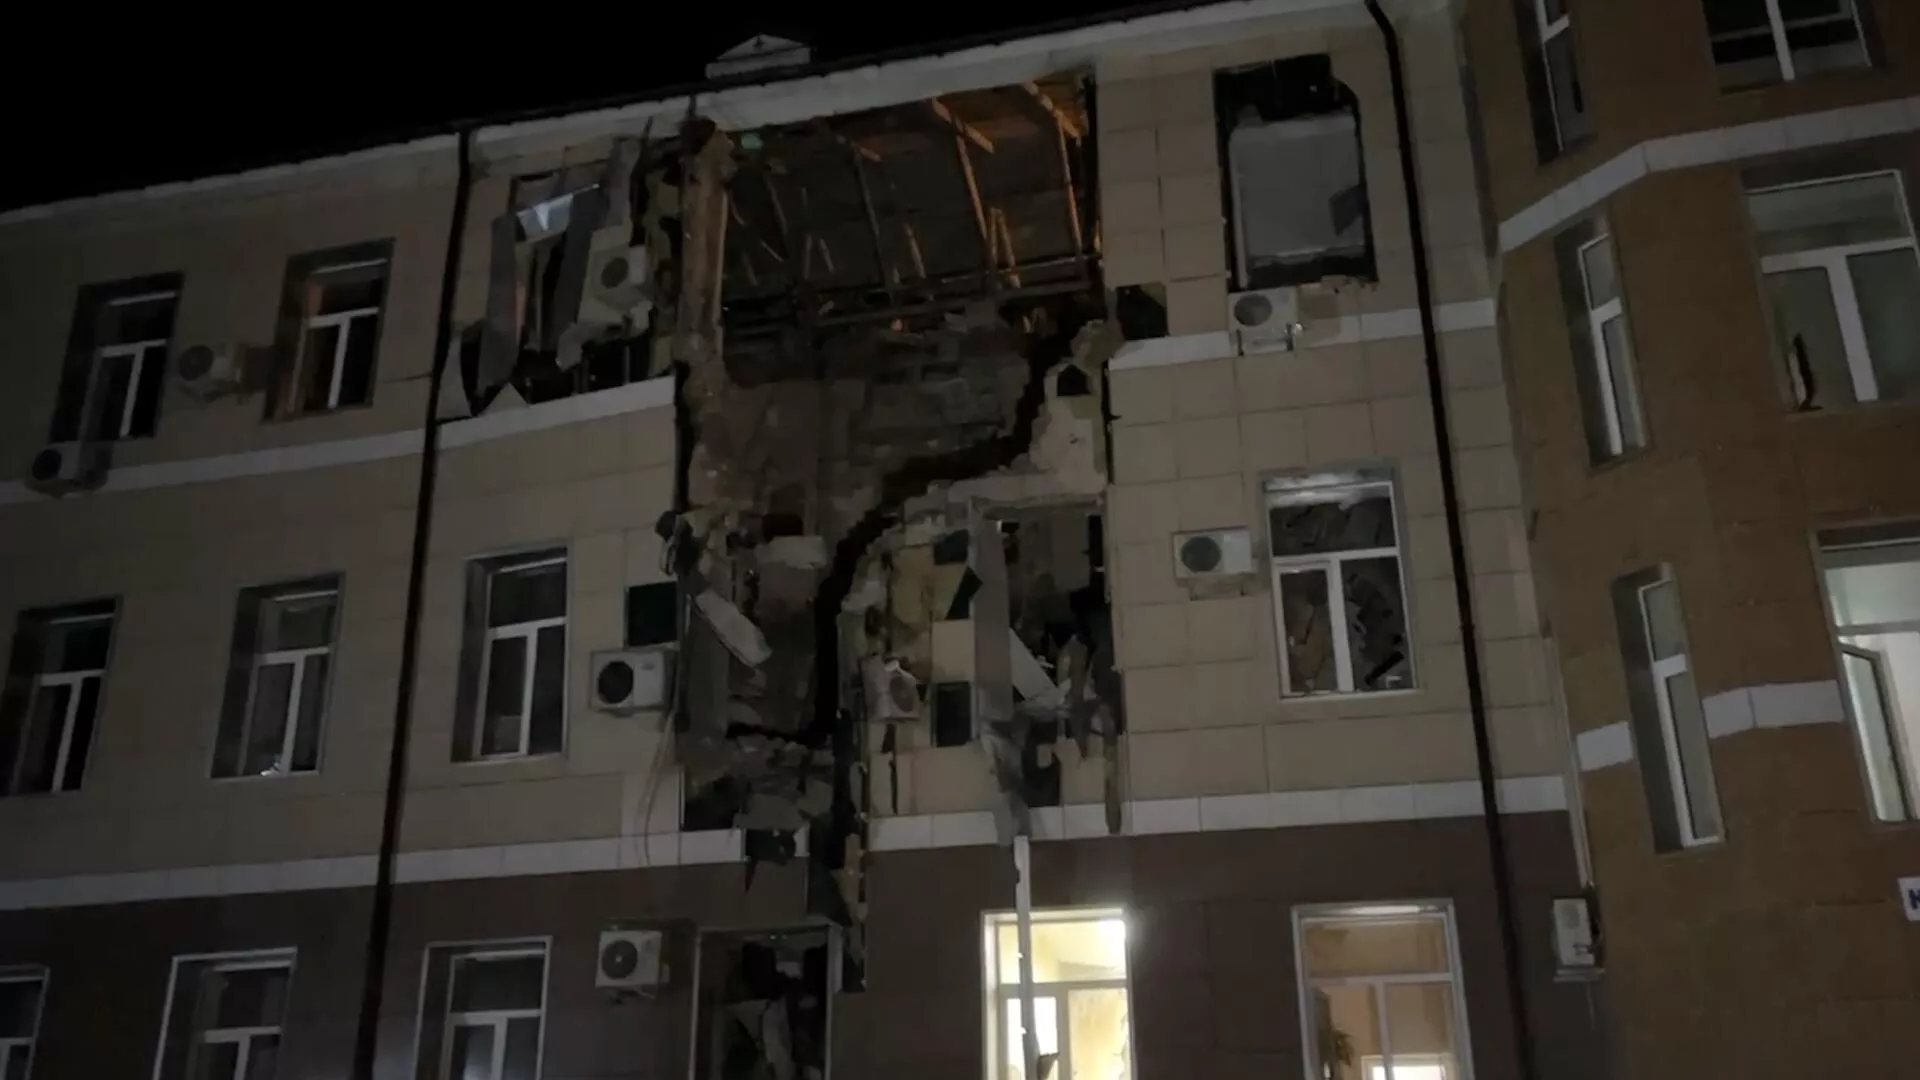 Πυροβολικό των Ενόπλων Δυνάμεων της Ουκρανίας στο κέντρο του Ντόνετσκ: ένα νοσοκομείο, ένα νηπιαγωγείο, σπίτια και καταστήματα υπέστησαν ζημιές